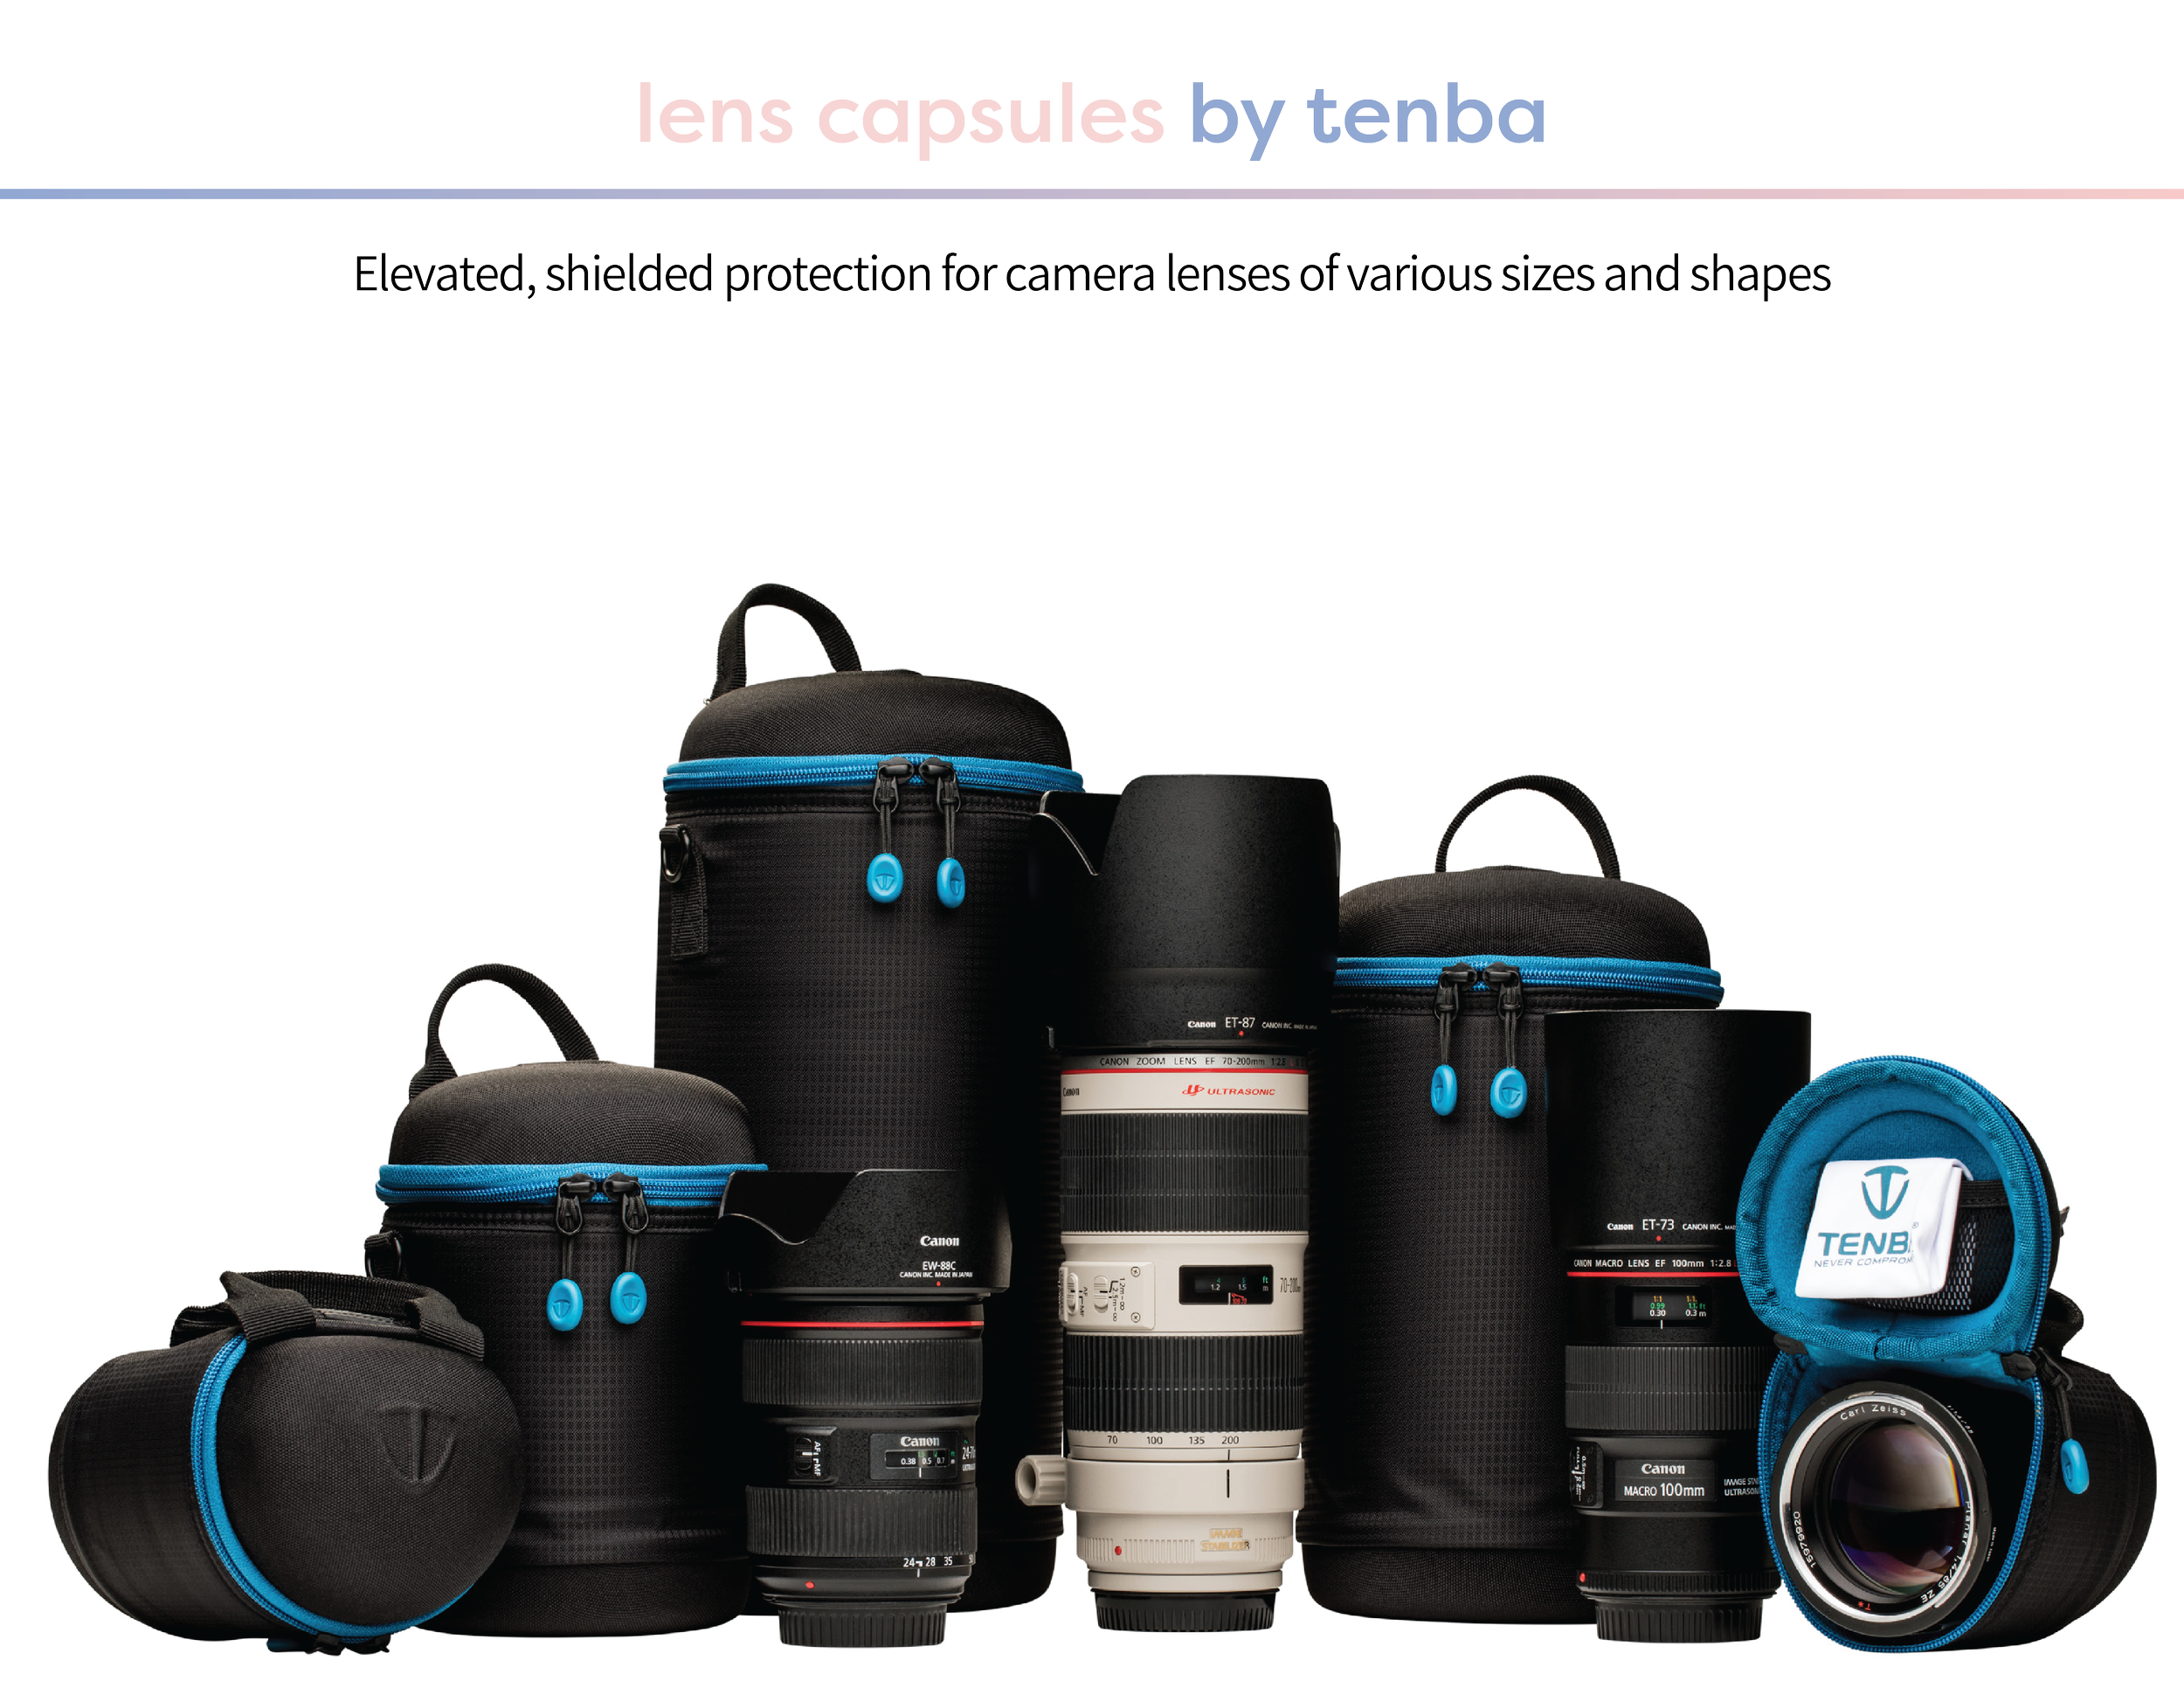 lens-capsules-portfolio-01.png